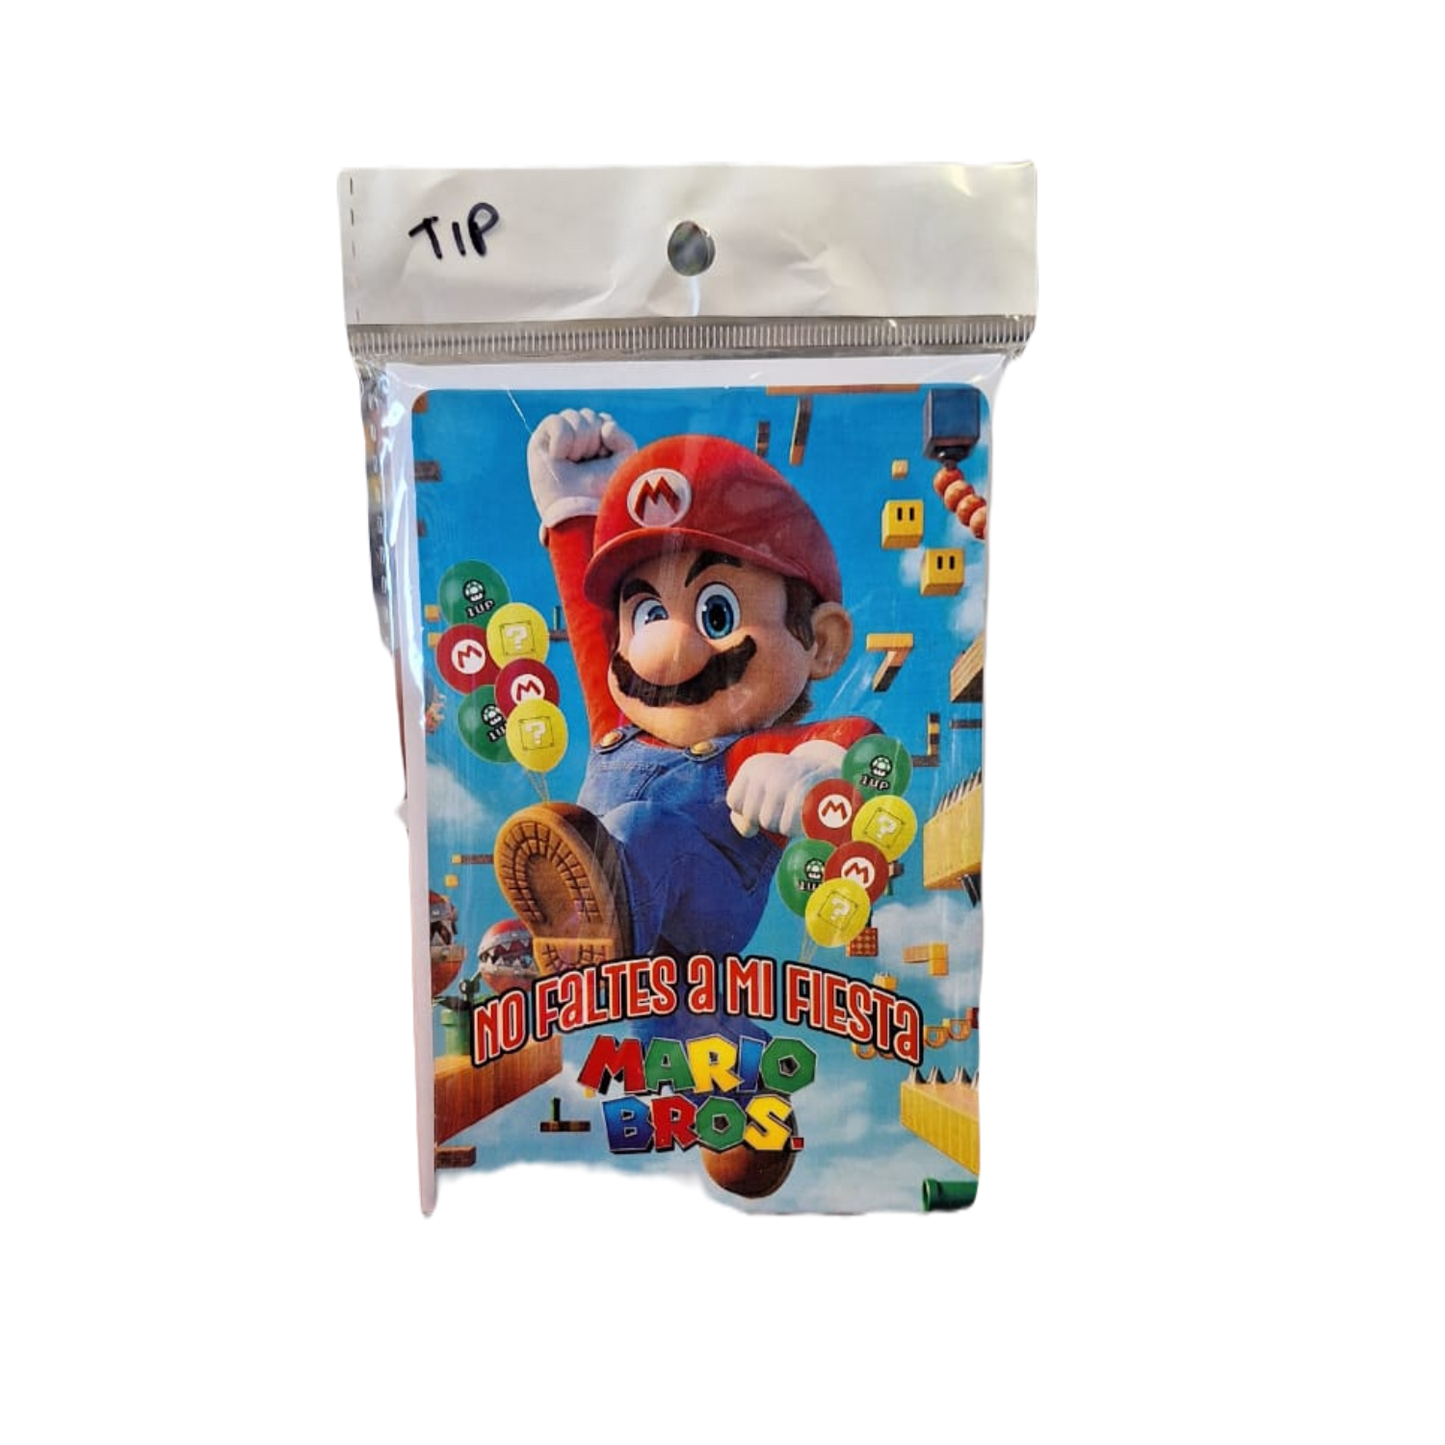 Paquete 10 Invitaciones Mario Bross